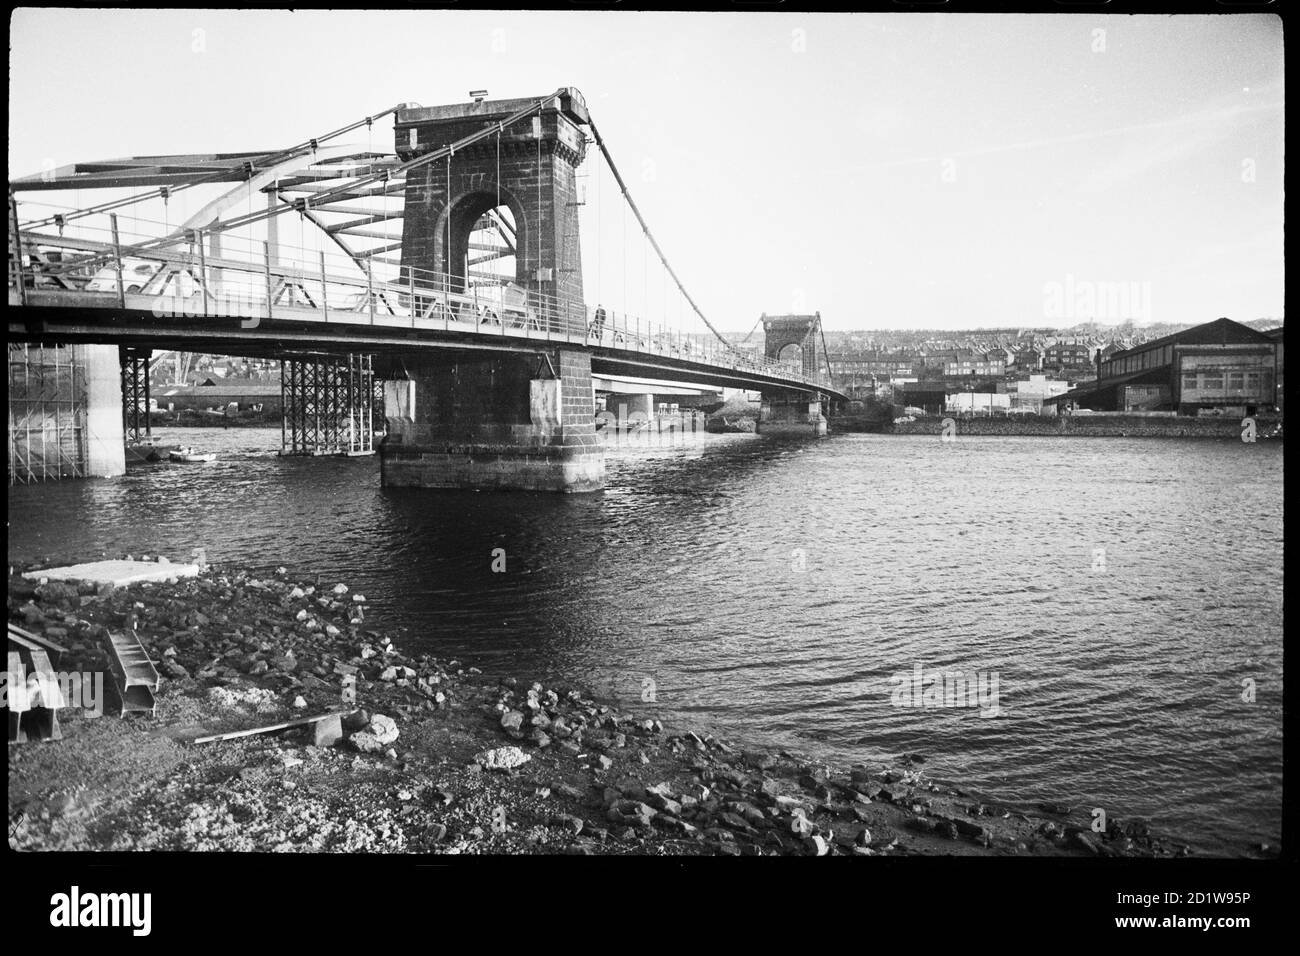 Allgemeine Ansicht der Old Scotswood Bridge, lokal als Kettenbrücke bekannt, eine Hängebrücke mit zwei großen steinernen Flusspiers, eröffnet im April 1831 und abgerissen im Jahr 1967, und zeigt den Bau der neuen Scotswood Bridge im Hintergrund. Stockfoto